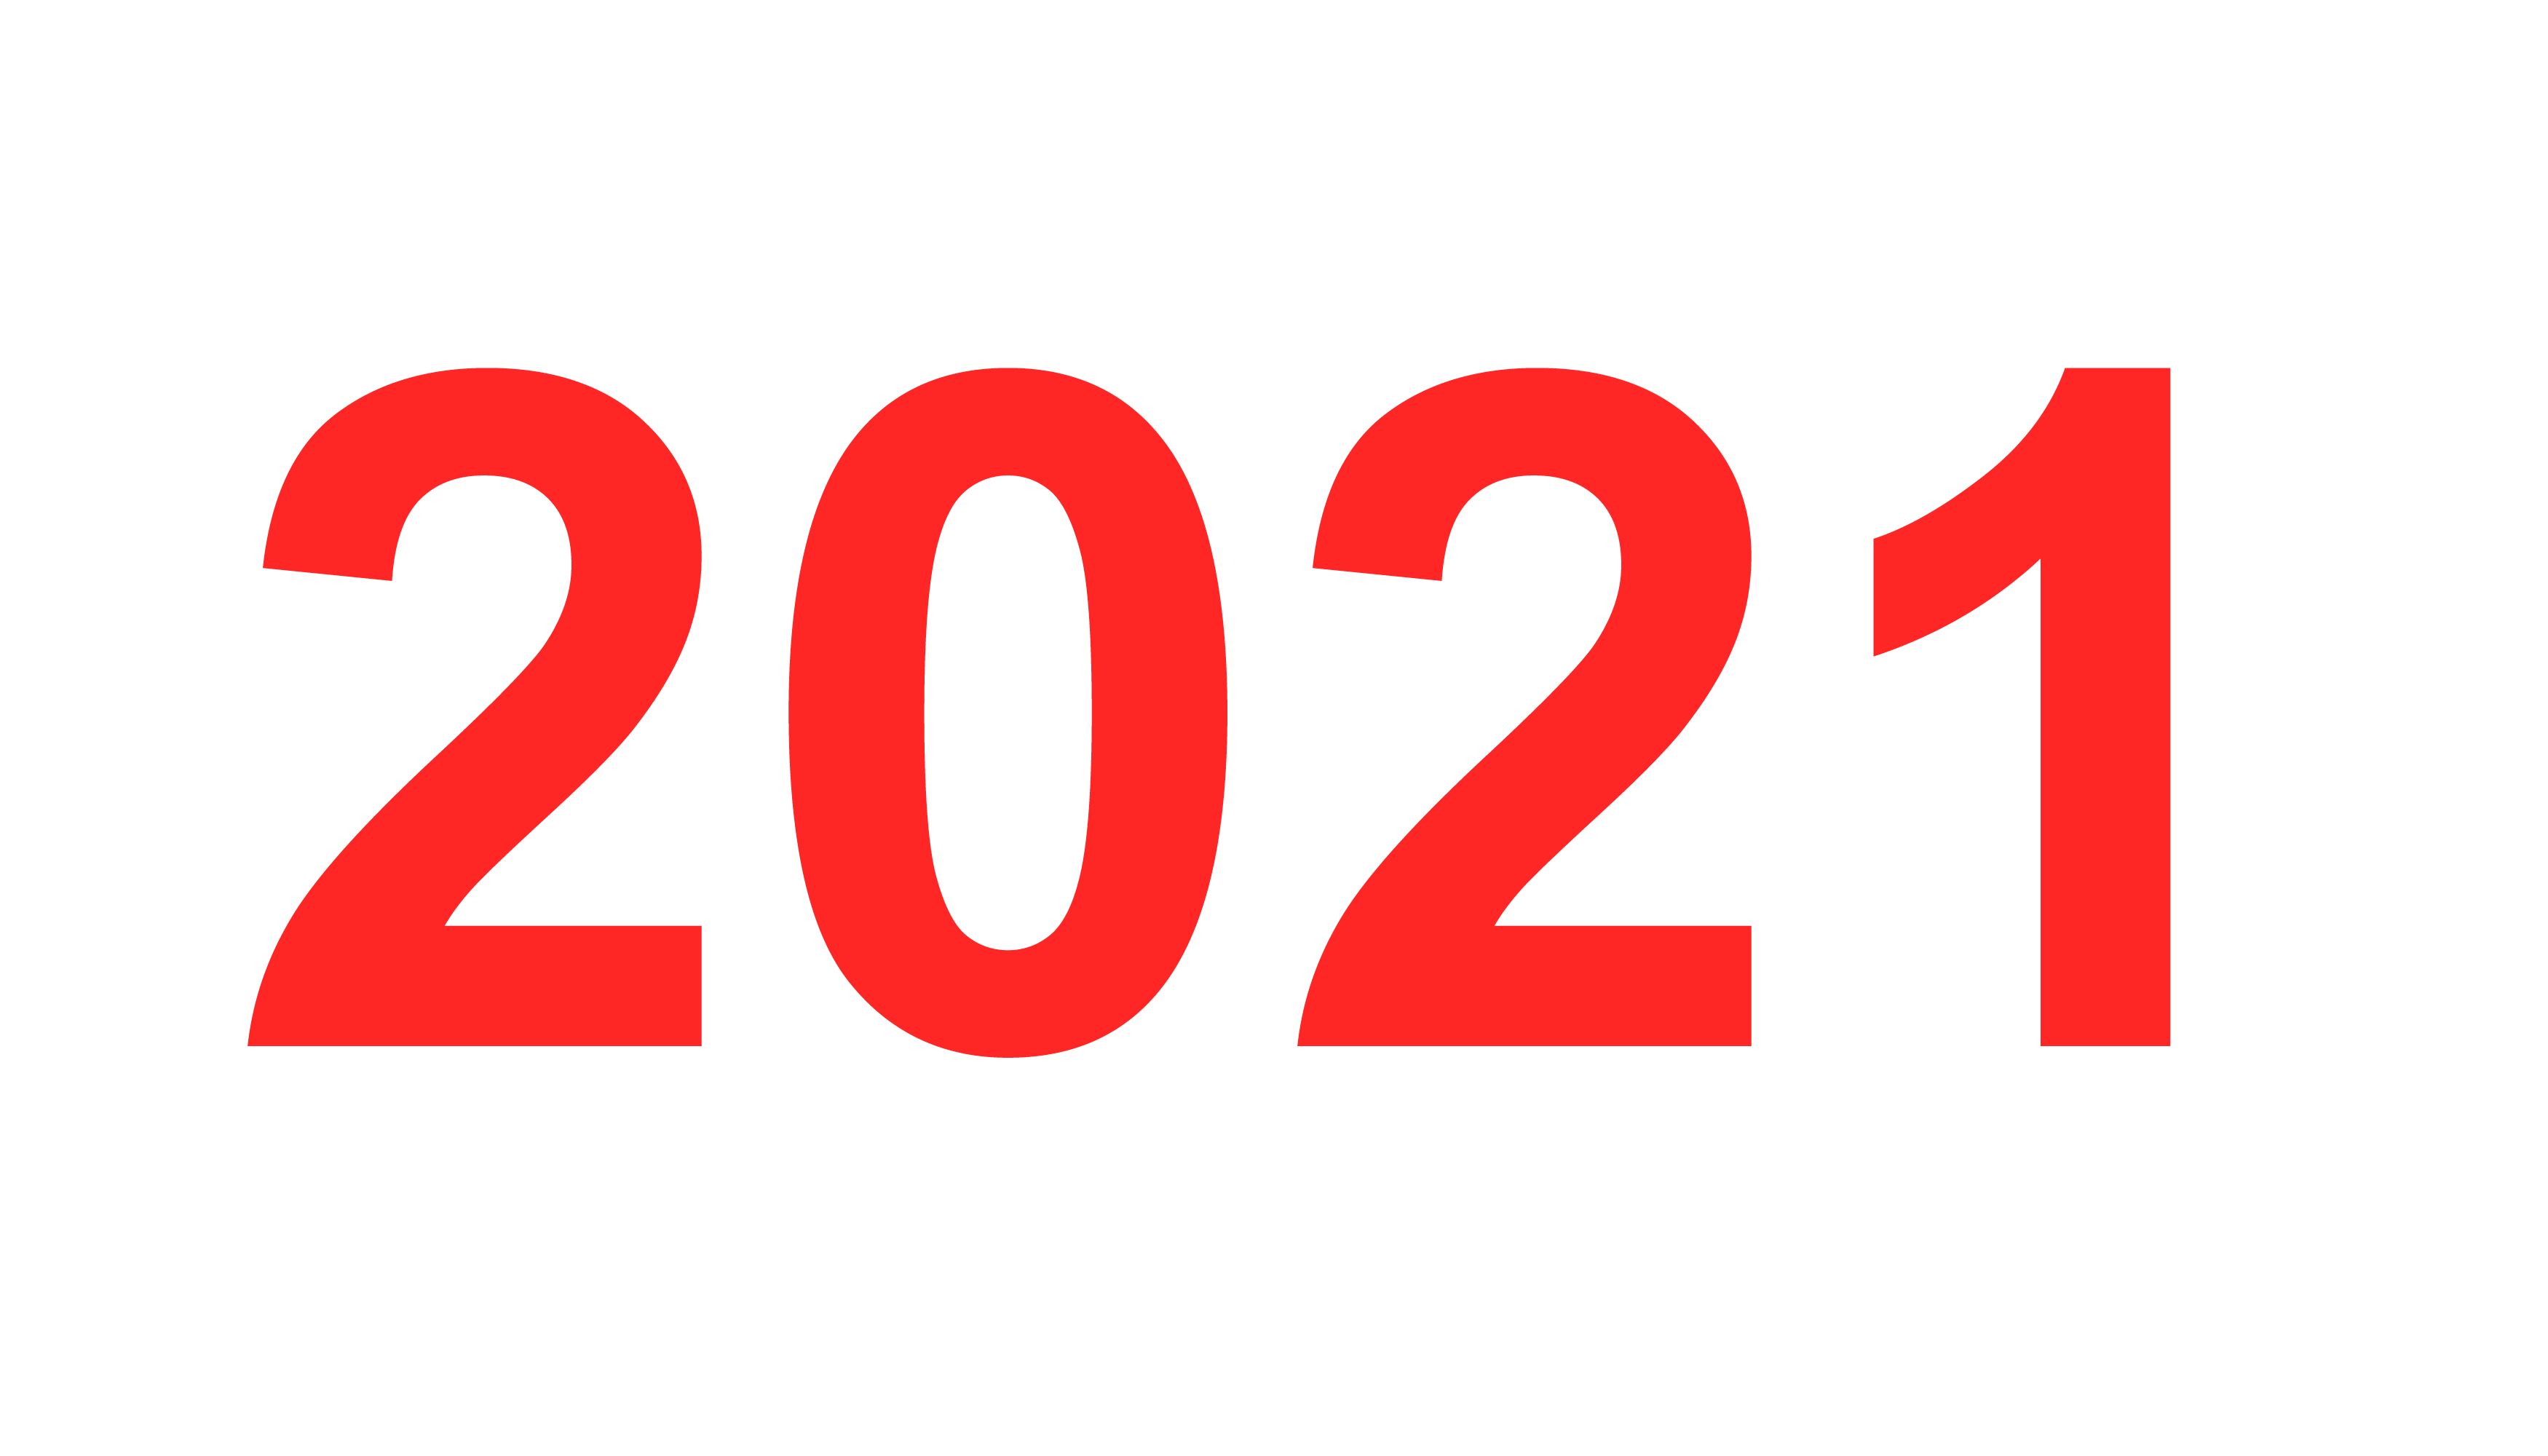 Anno 2021